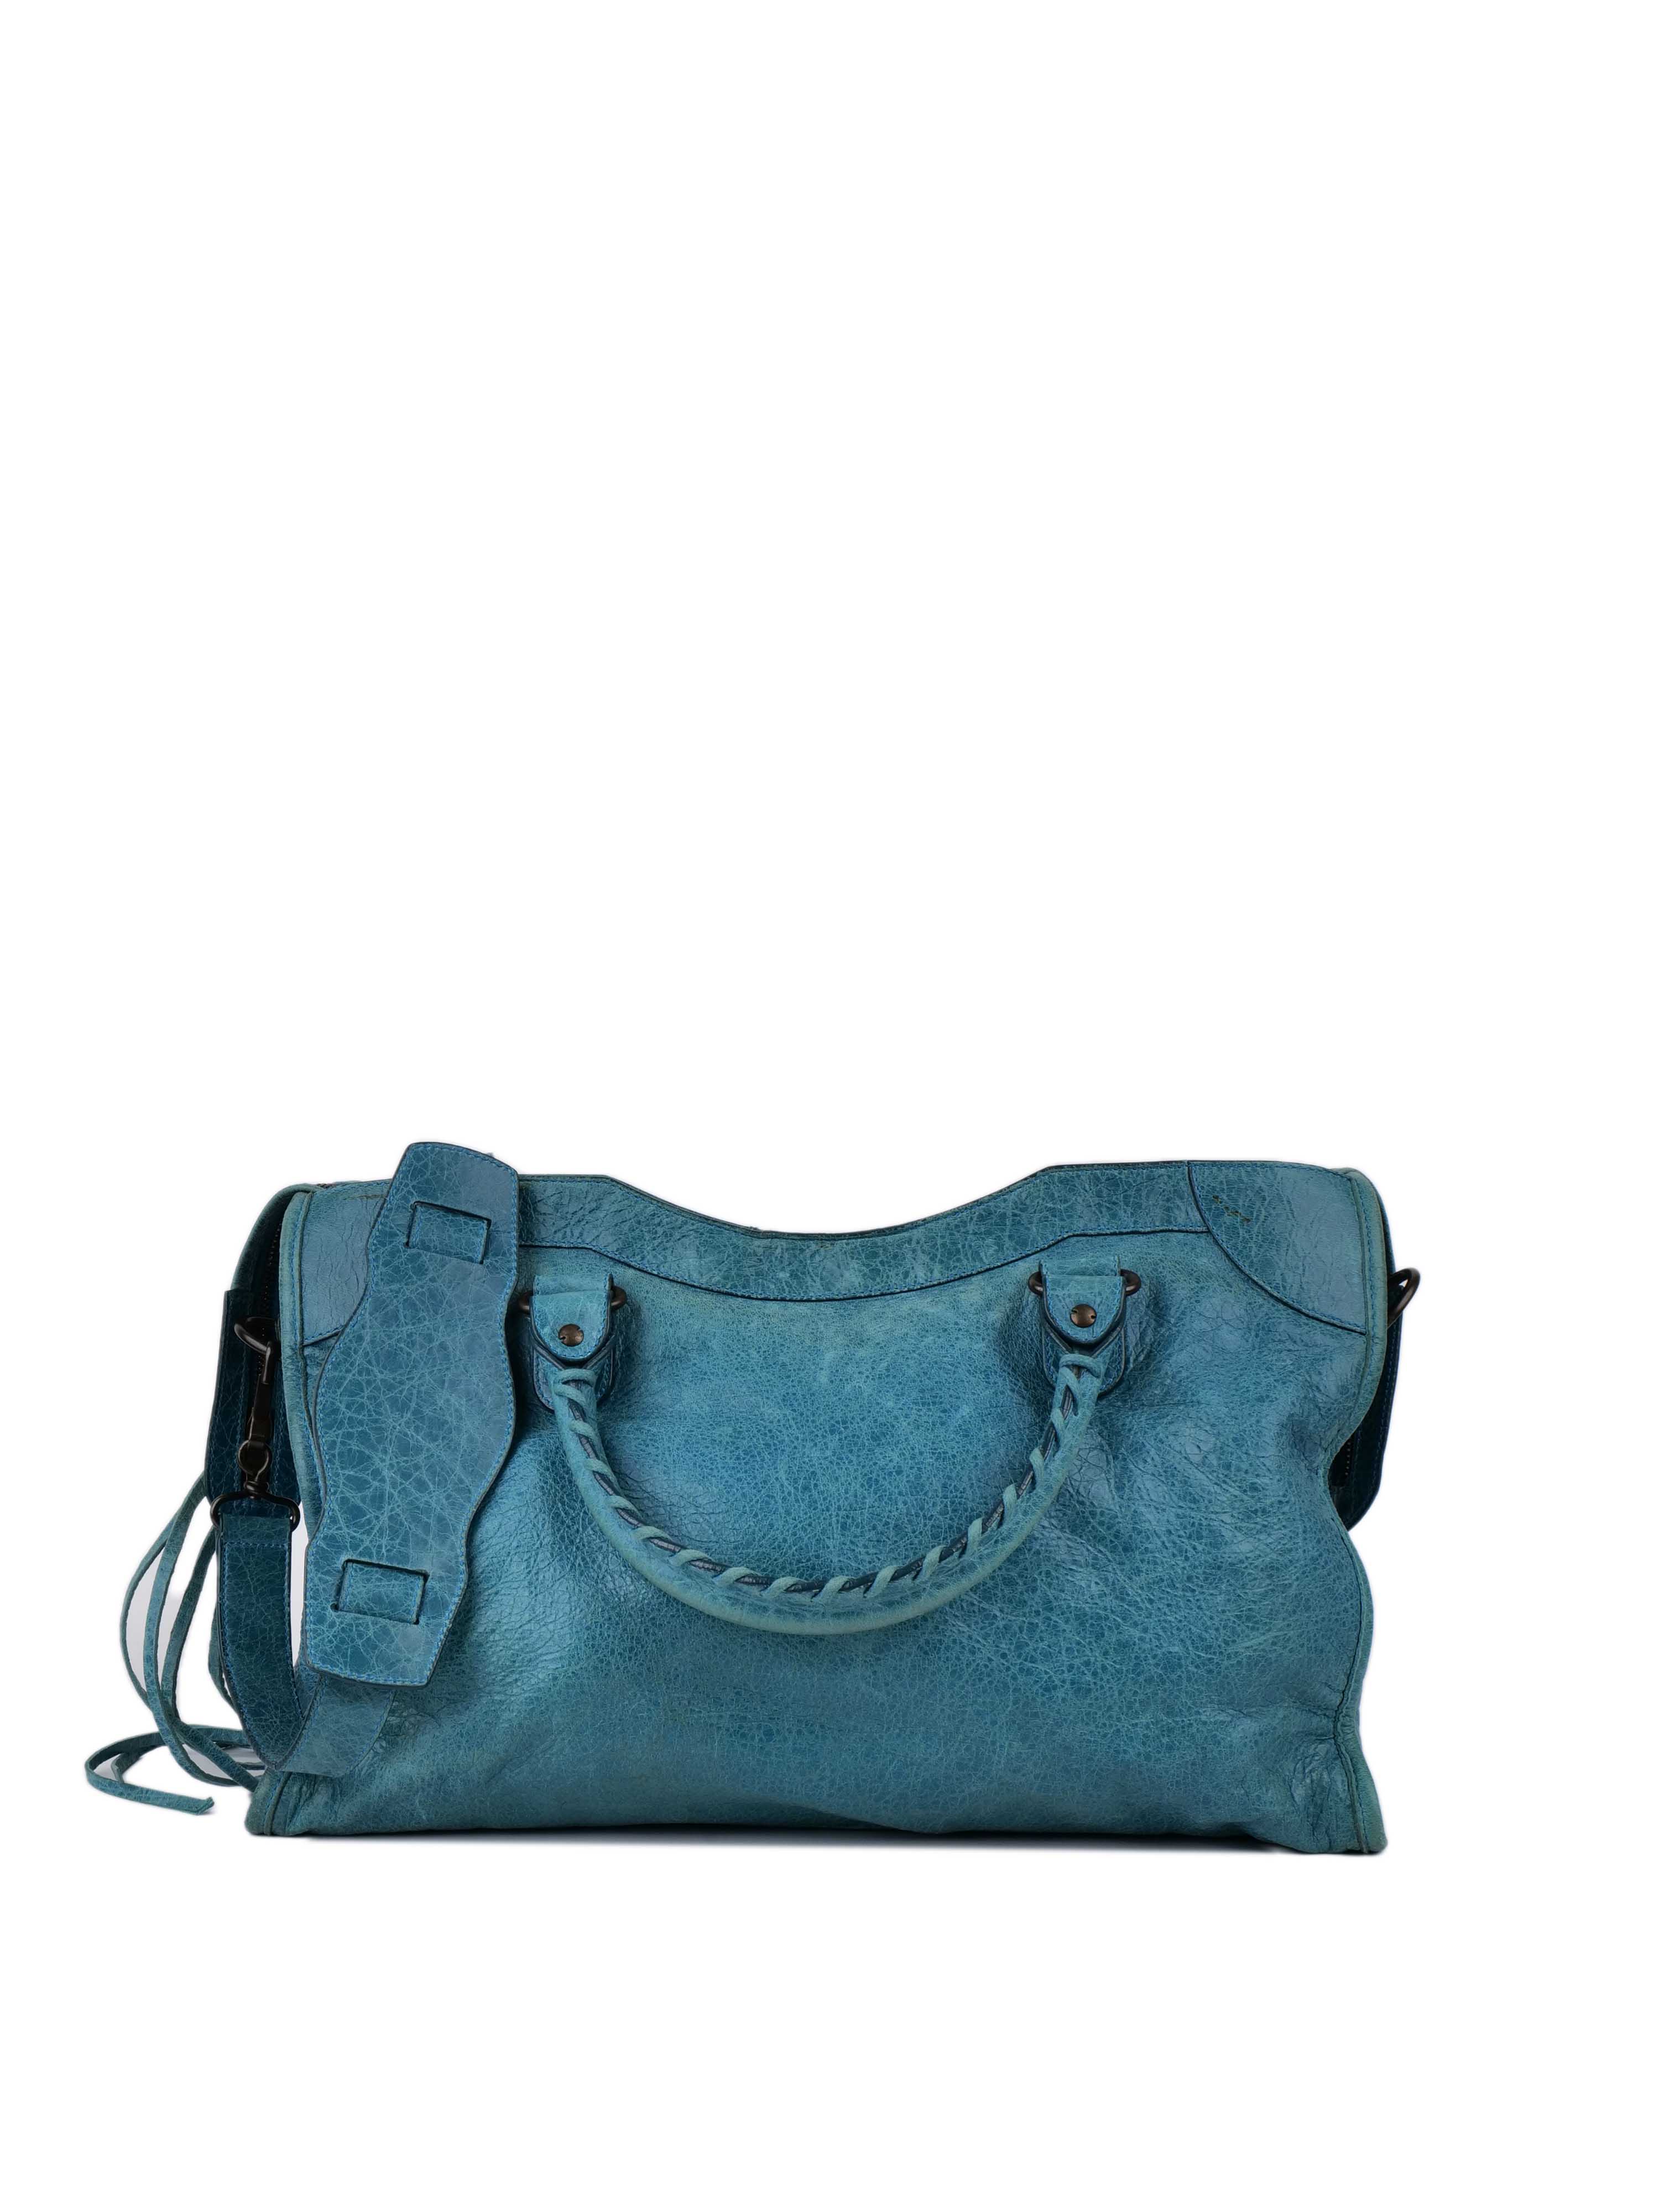 Balenciaga Blue City Bag.